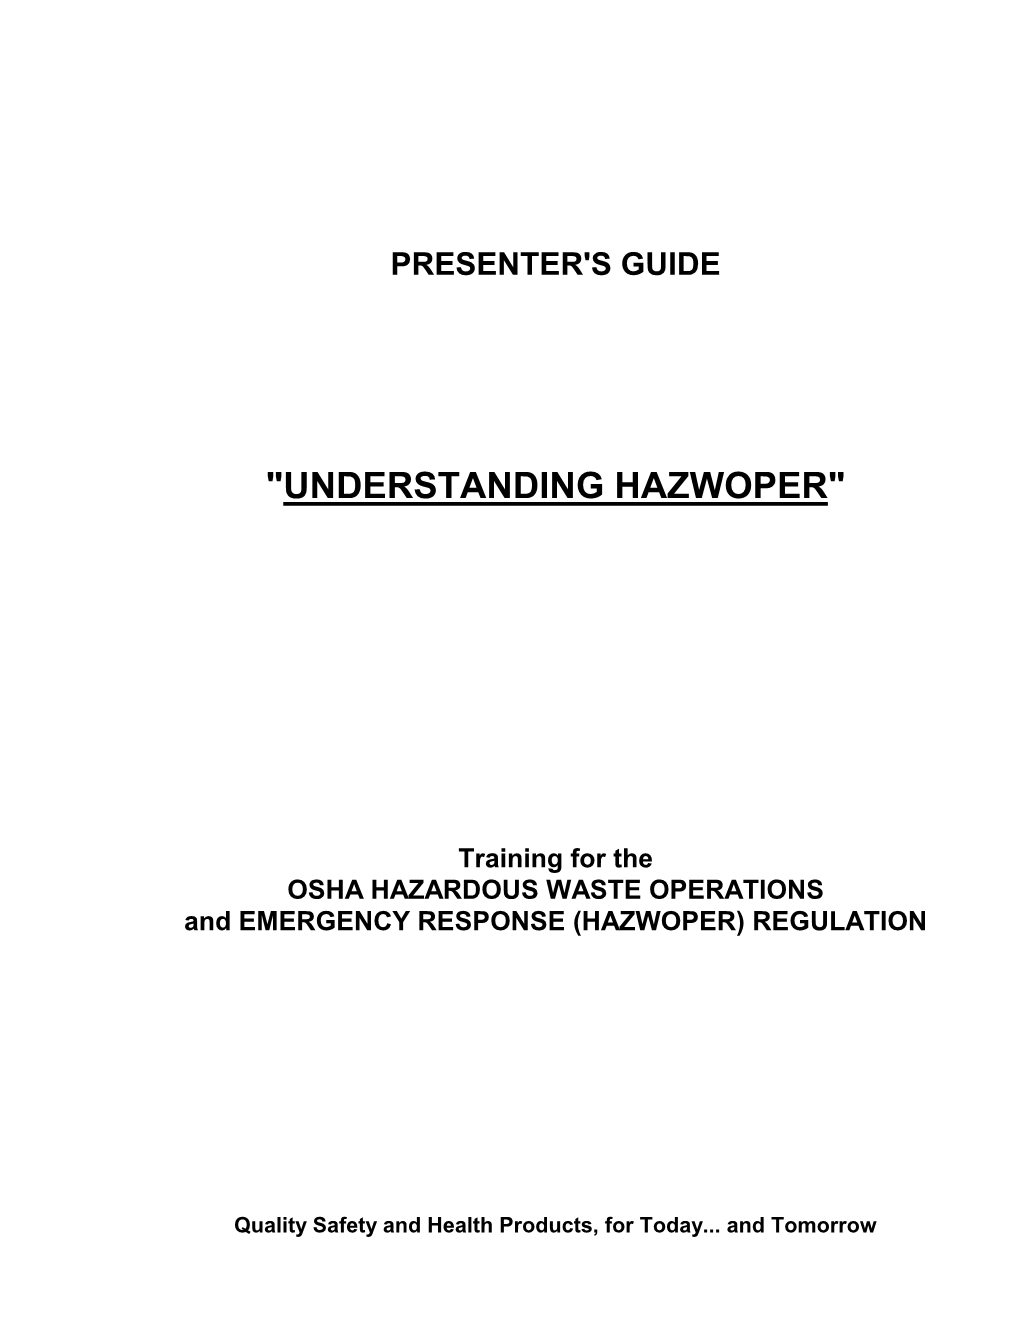 "Understanding Hazwoper"